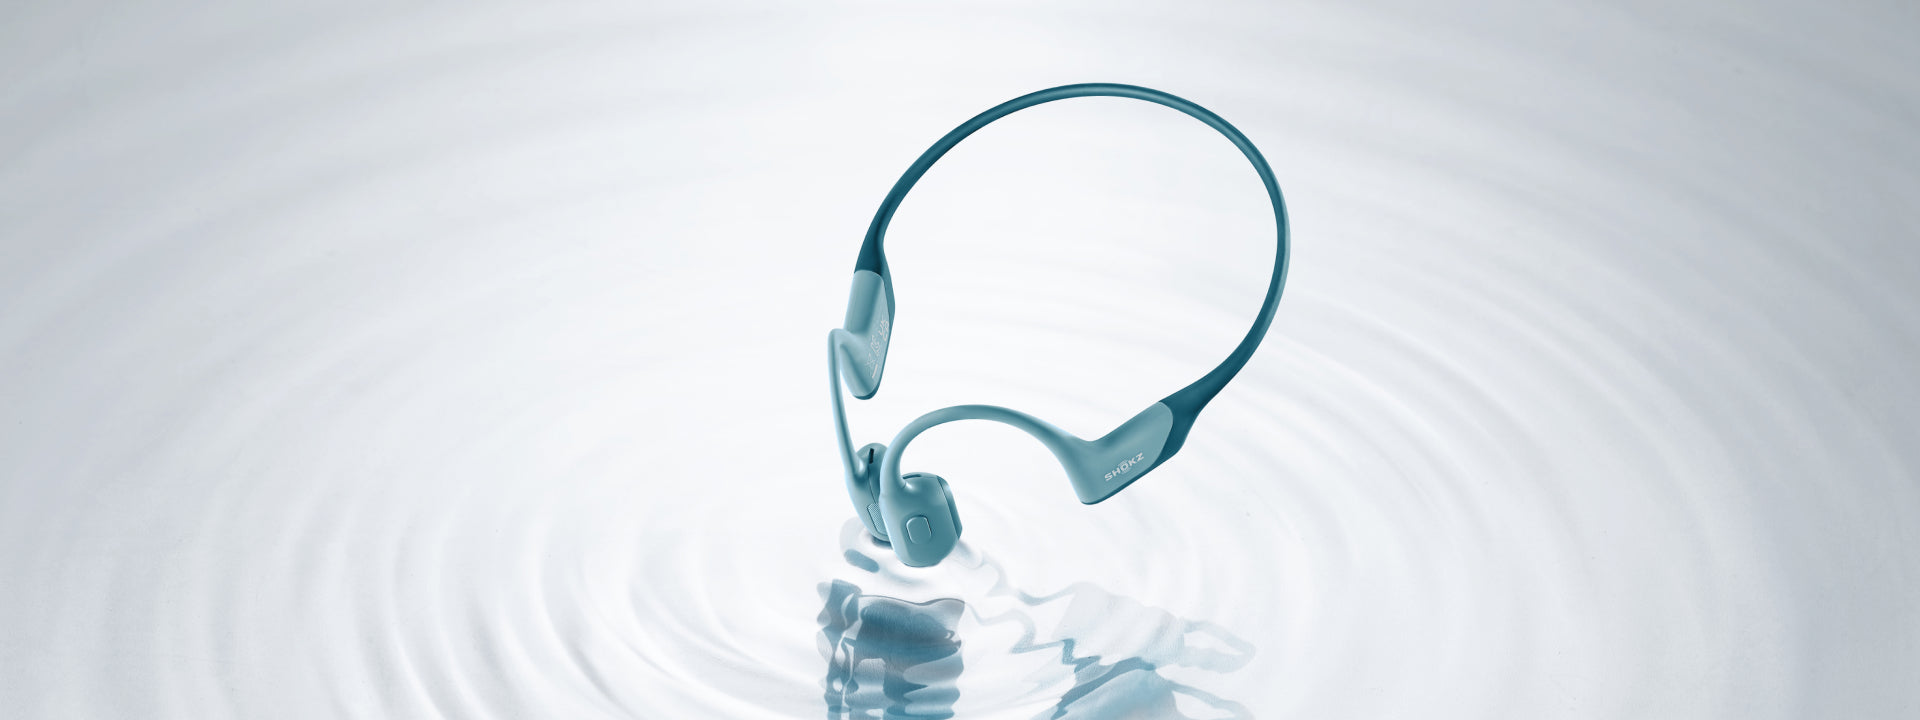 Wireless oder Bluetooth: Was eignet sich besser für Kopfhörer?